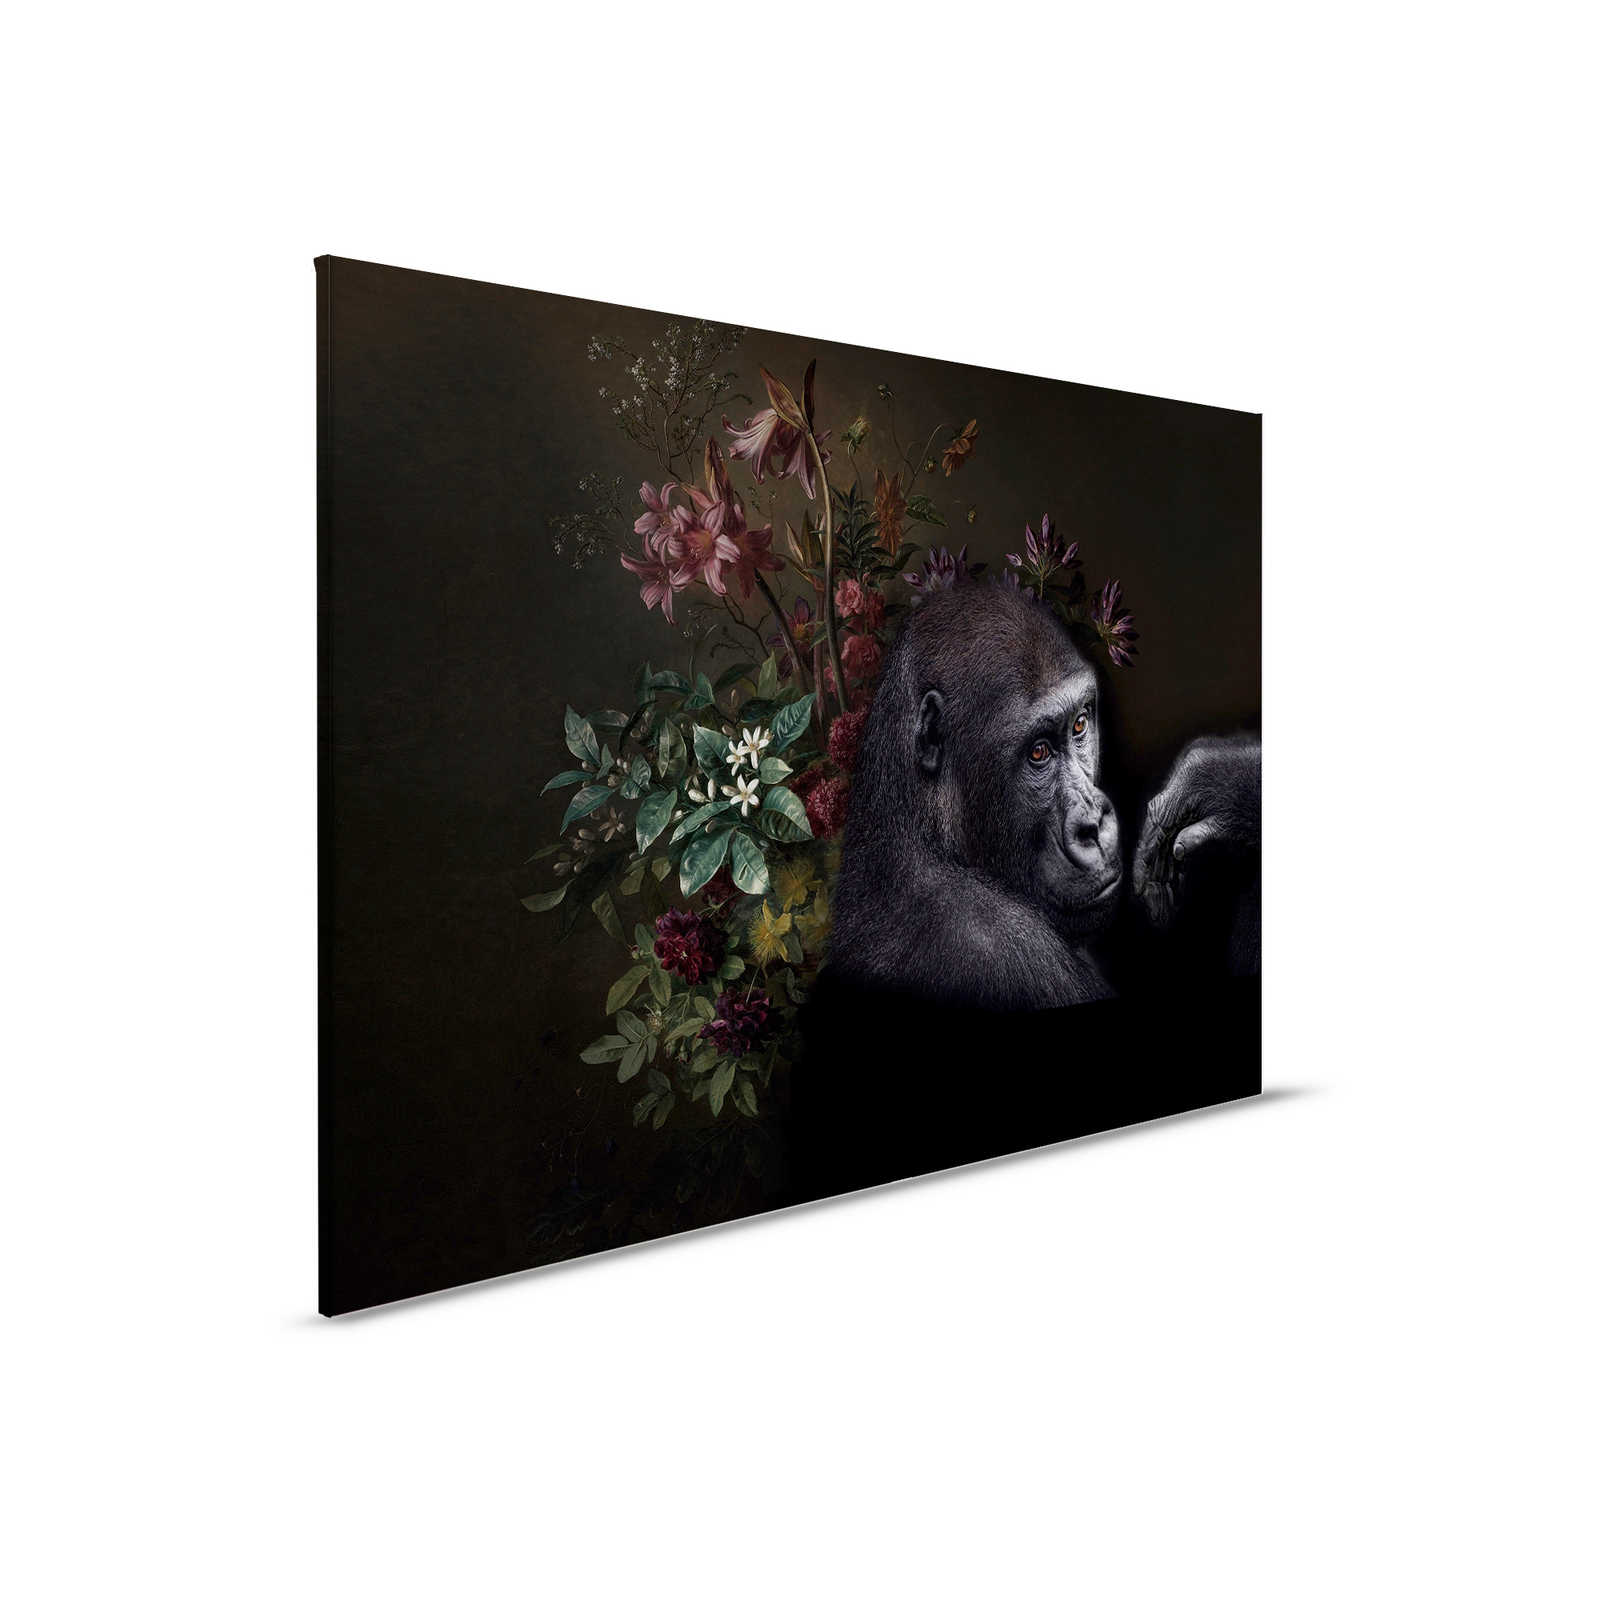         Canvas painting Gorilla Portrait with flowers - 0,90 m x 0,60 m
    